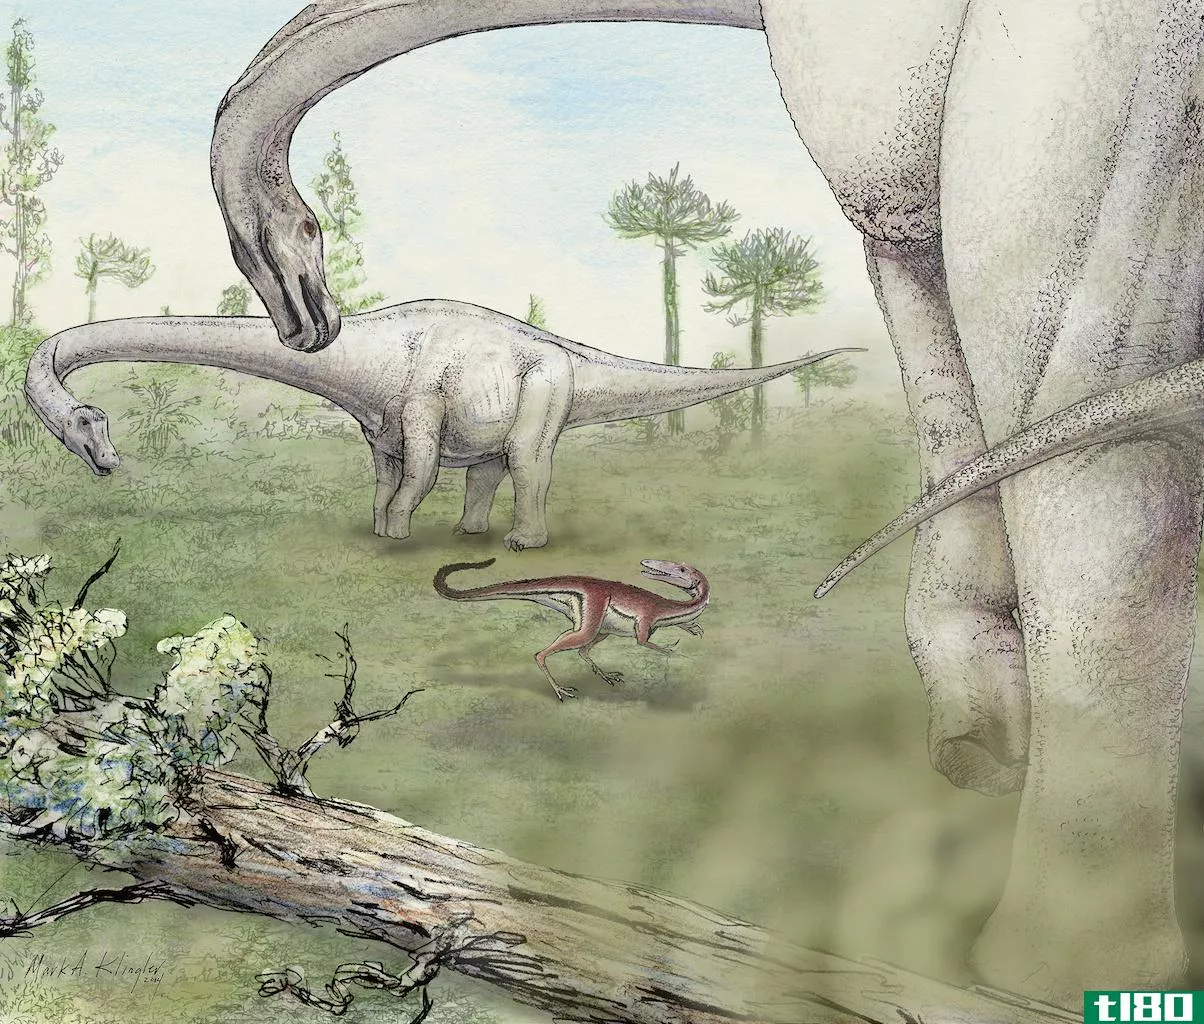 巨大的新恐龙被发现并命名为“无所畏惧”